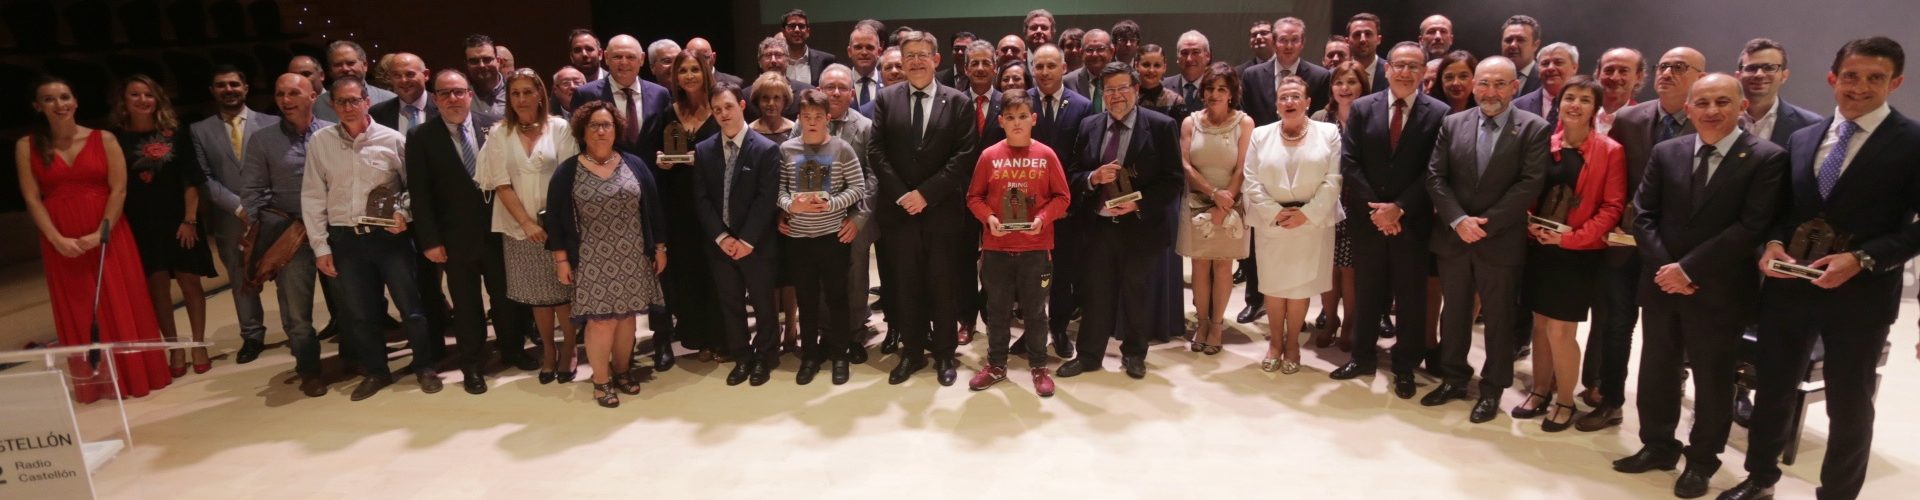 La Fira de Morella recibe uno de los XIV premios Radio Castellón